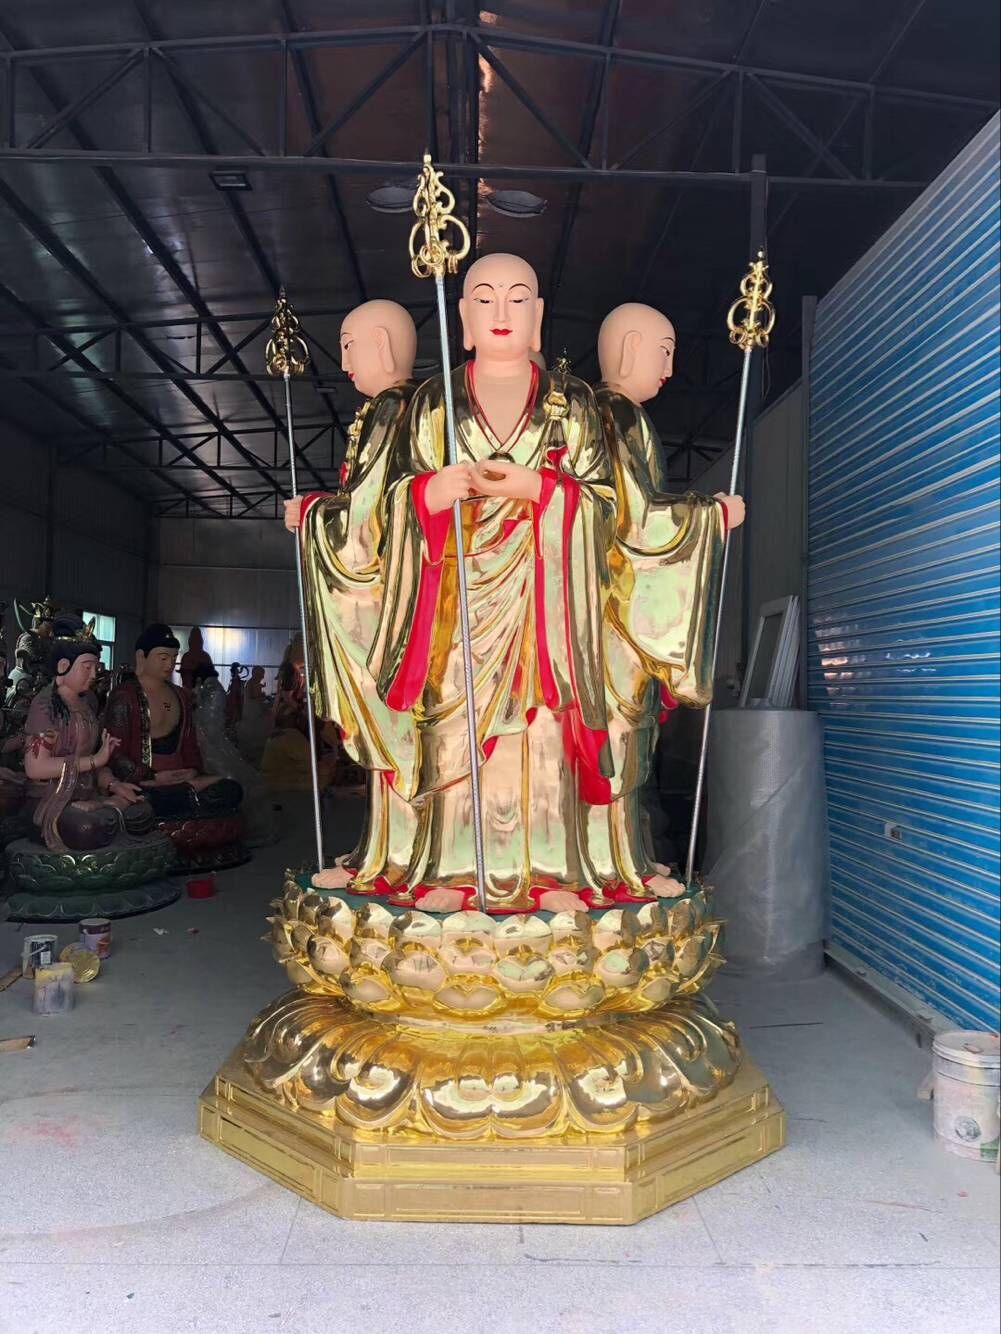 佛像 温州优质佛像厂家批发供应铸铜地藏王菩萨 铸铜地藏王菩萨 站像地藏王佛像